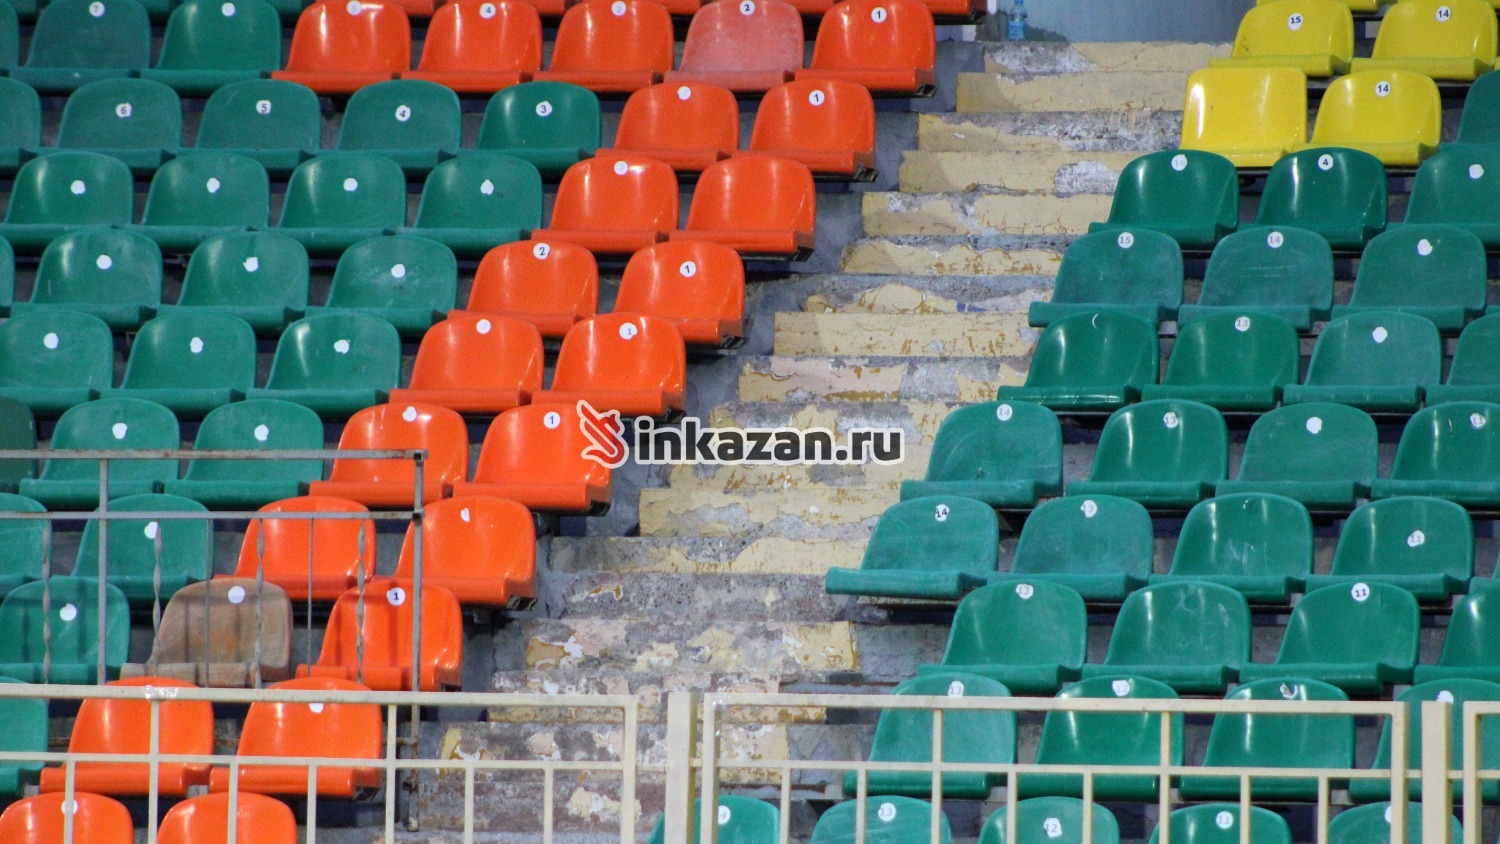 Трибуны Центрального стадиона в Казани